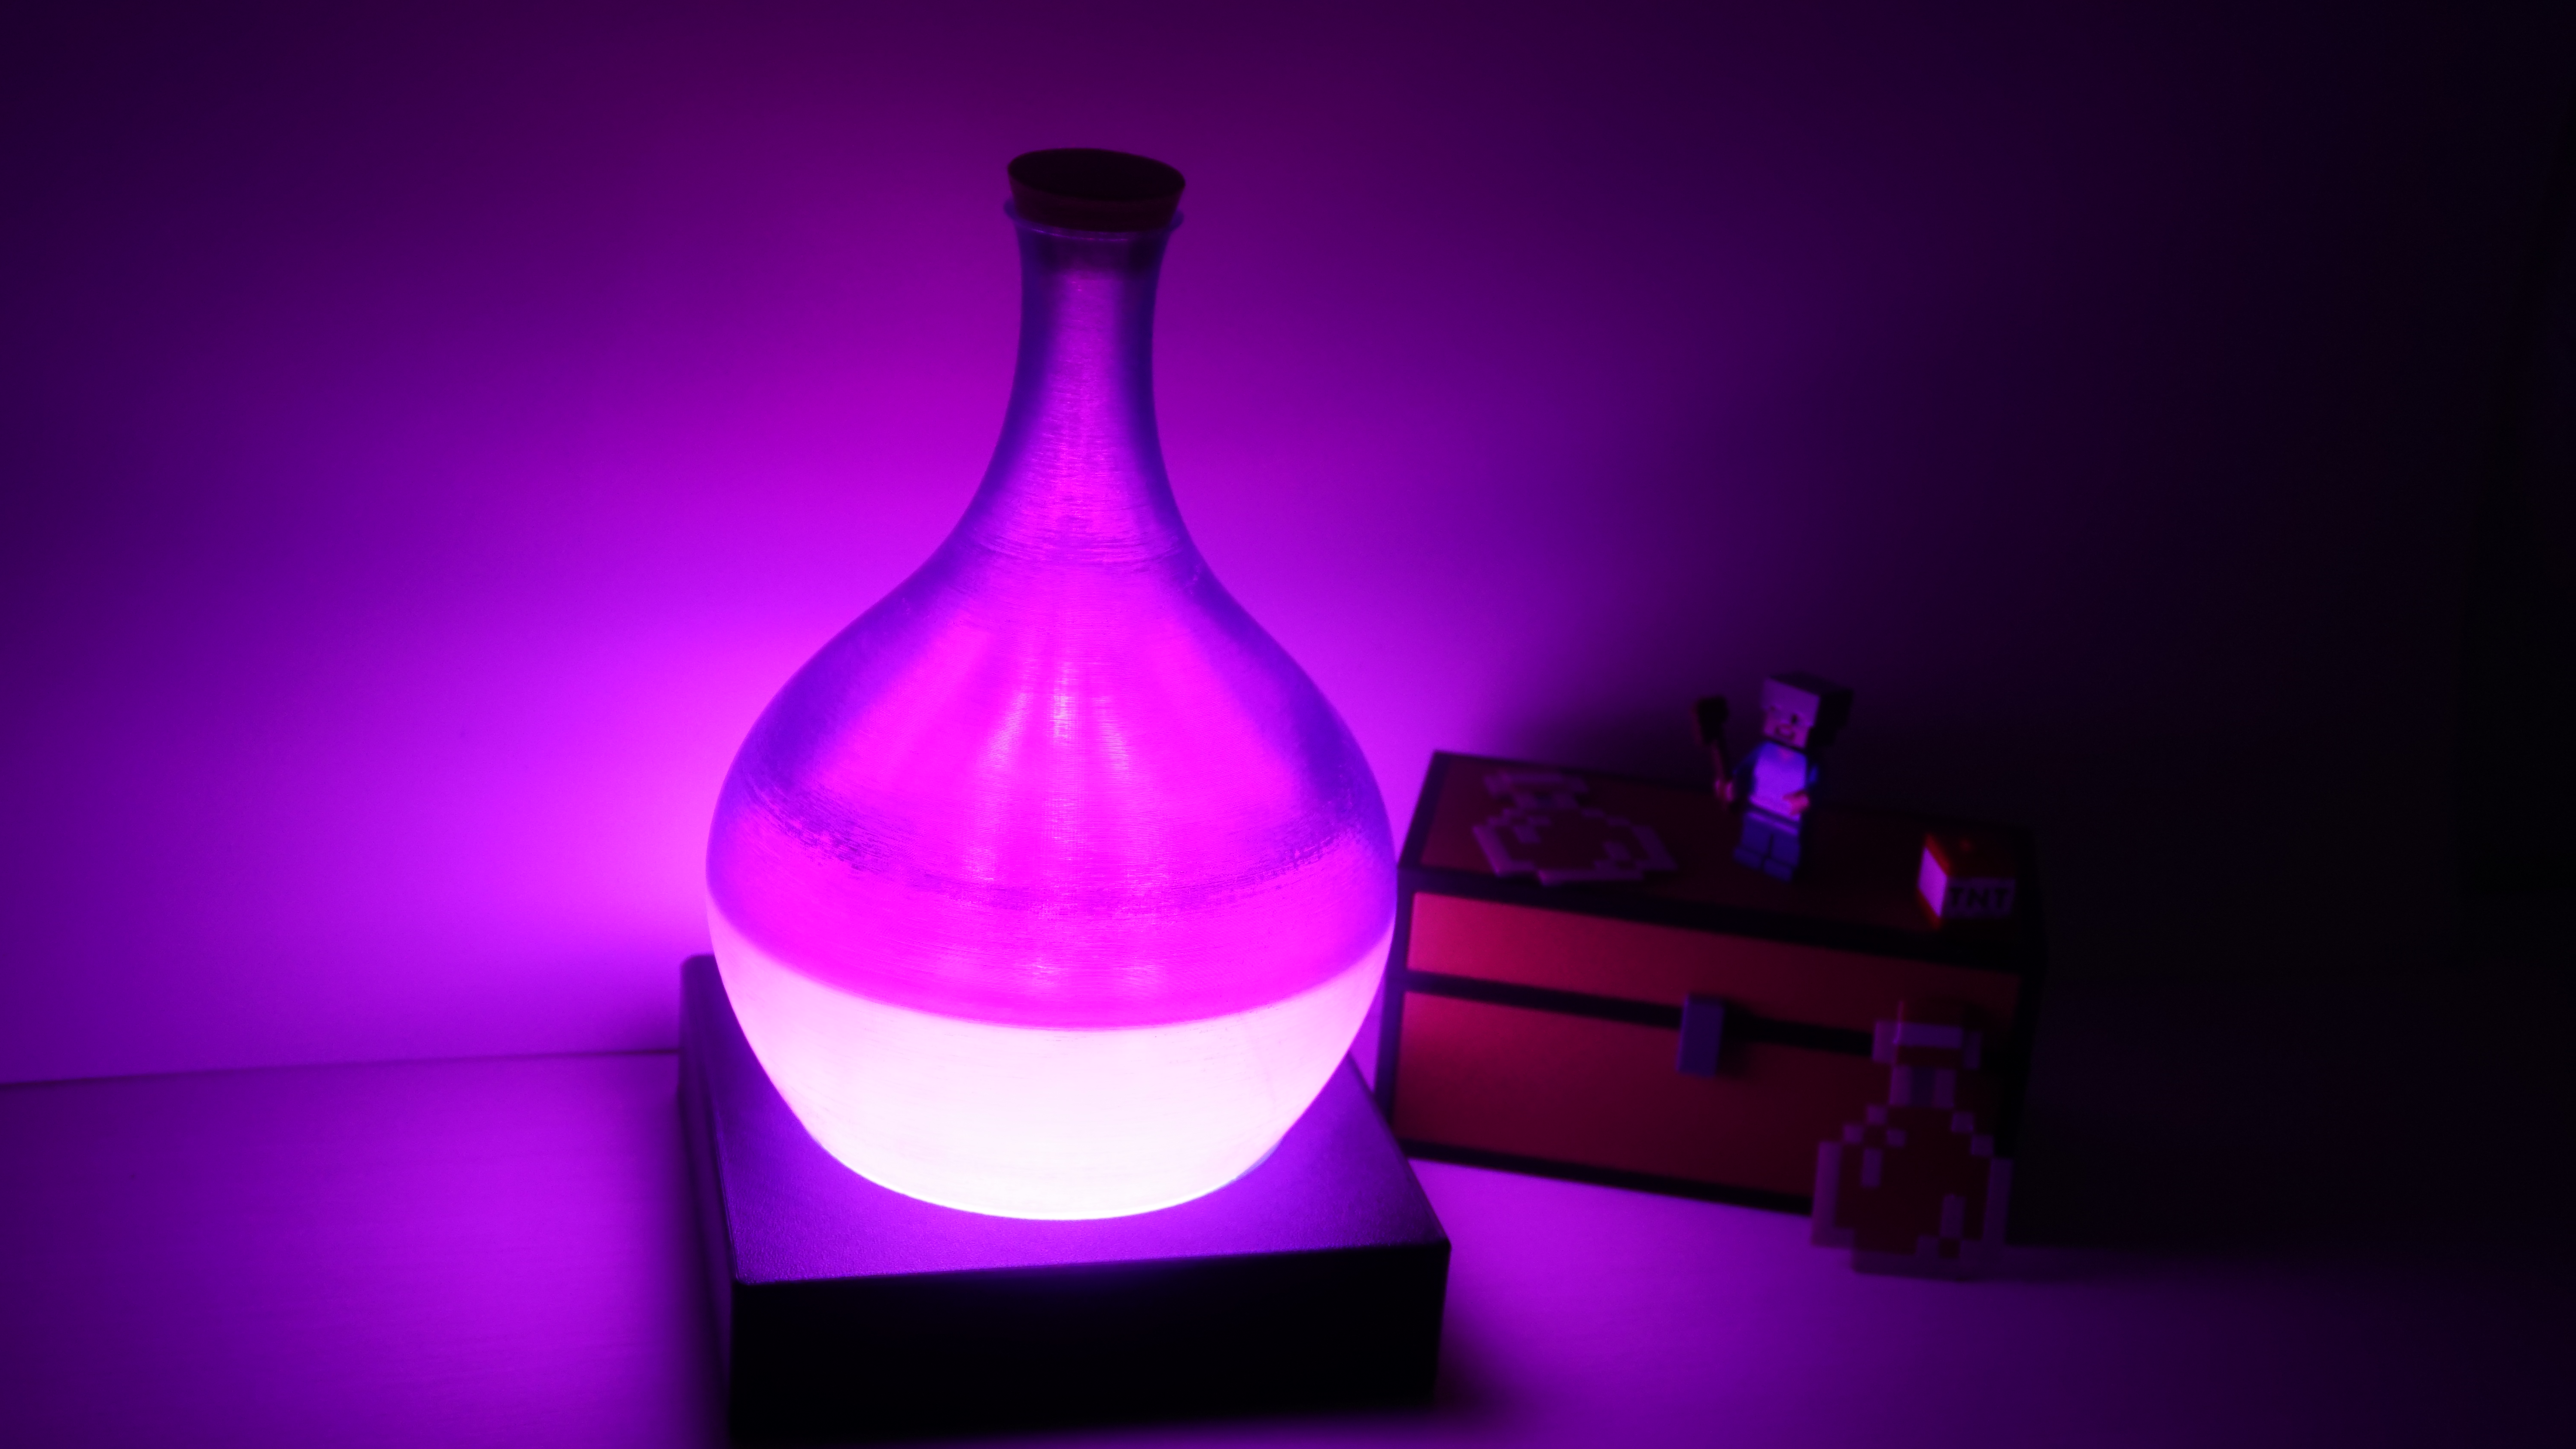 Enchanted potion lamp